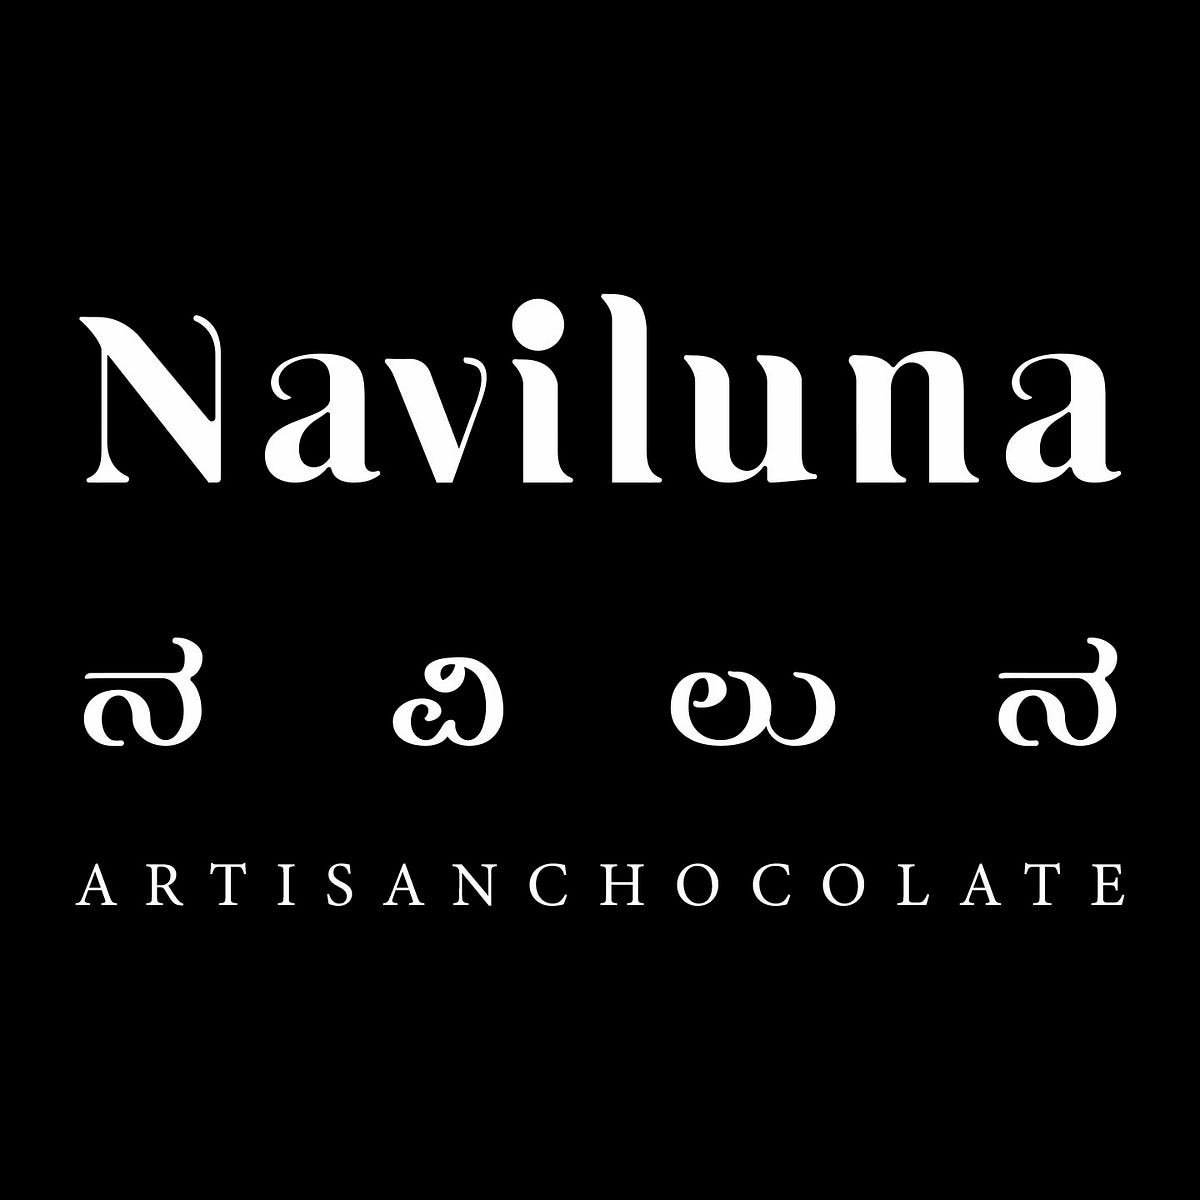 Trending stories published on Naviluna – Medium